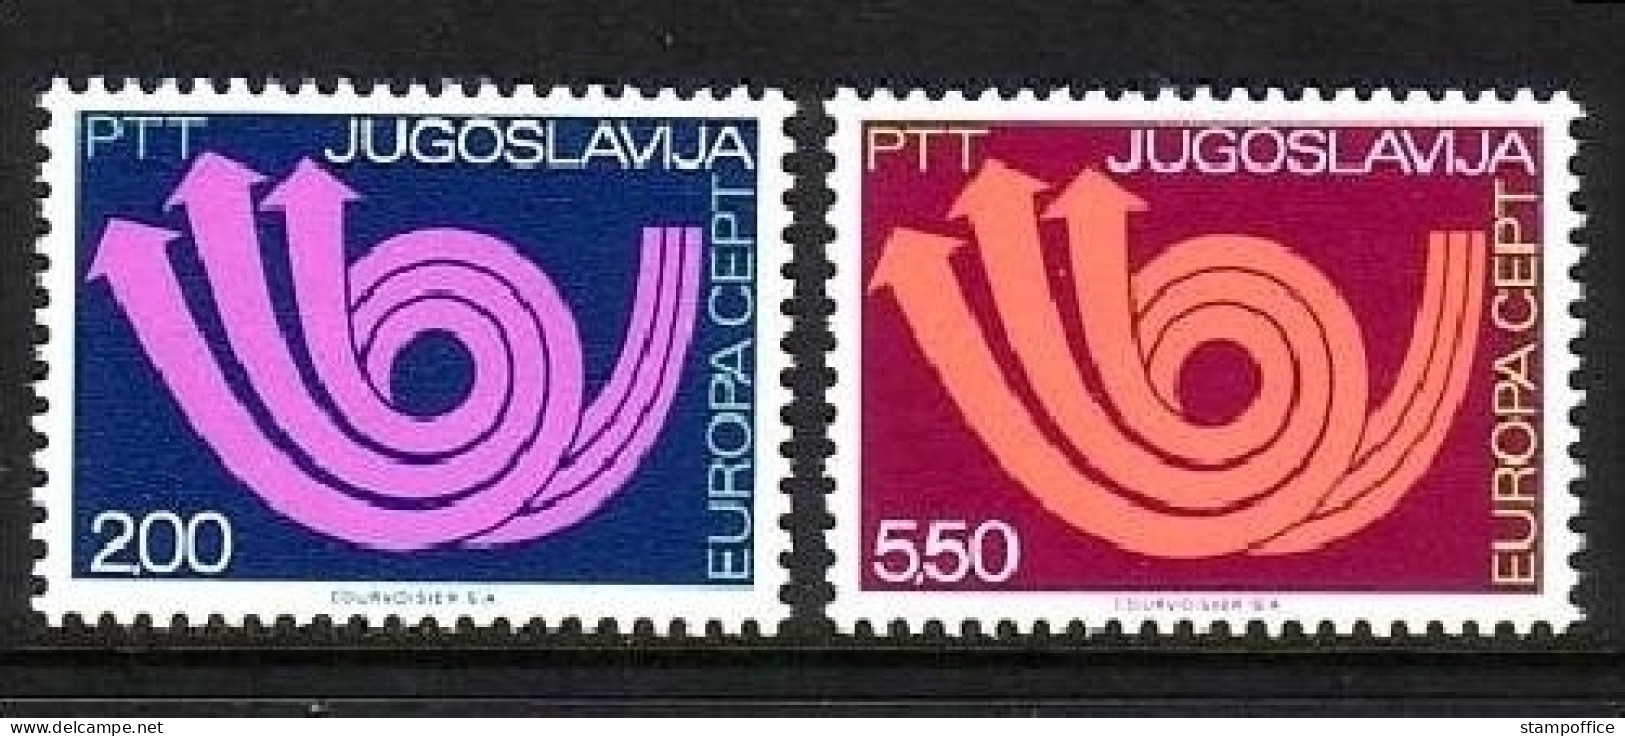 JUGOSLAWIEN MI-NR. 1507-1508 POSTFRISCH(MINT) EUROPA 1973 - POSTHORN - 1973